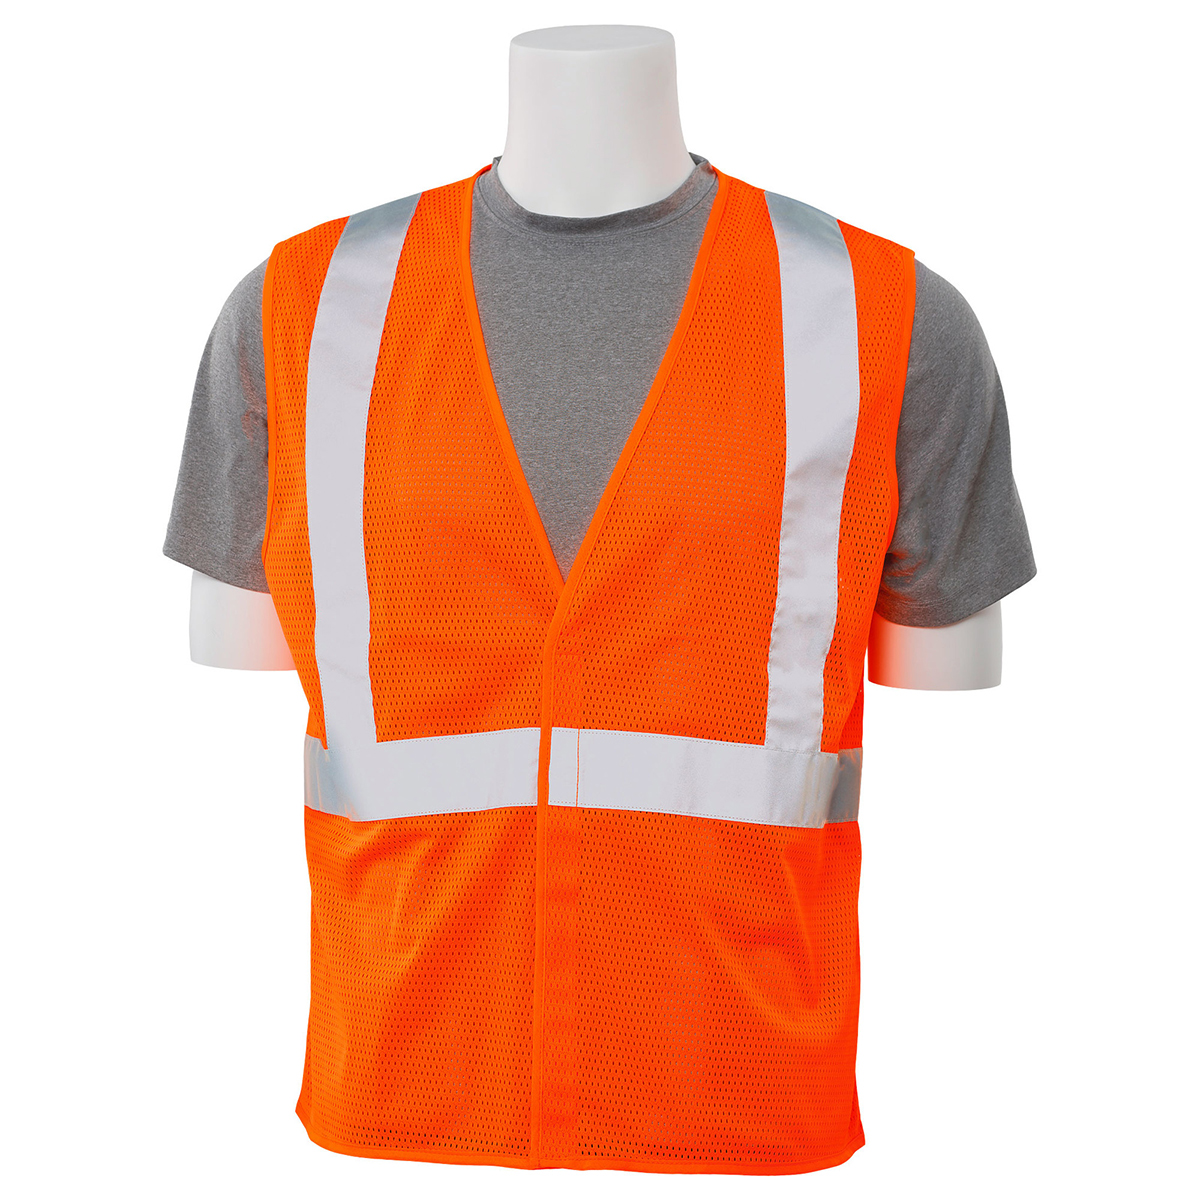 Mesh Safety Vest Hi Viz Orange LG